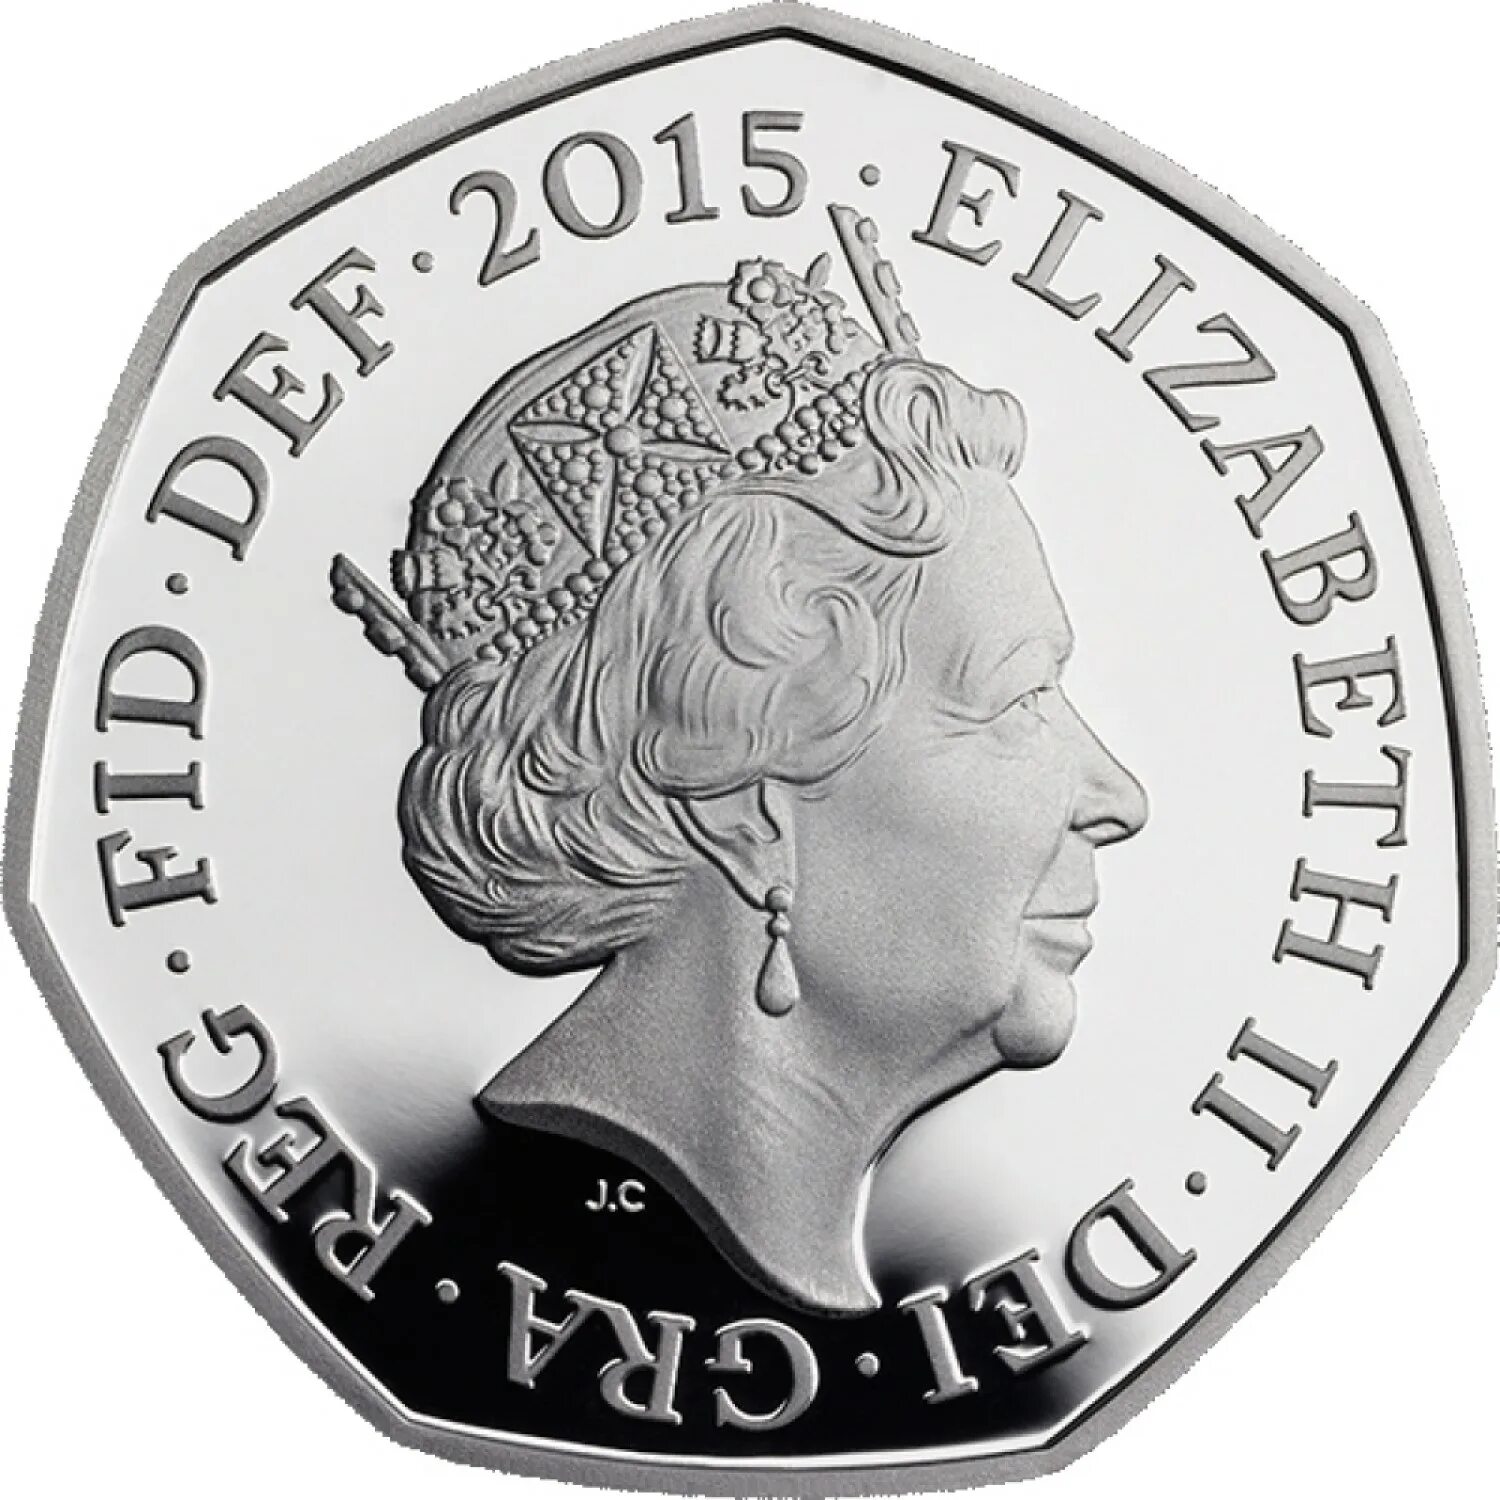 Монета с королевой Елизаветой. Манетка вликипритание Elizabeth. Монеты с королевой Елизаветой 2.